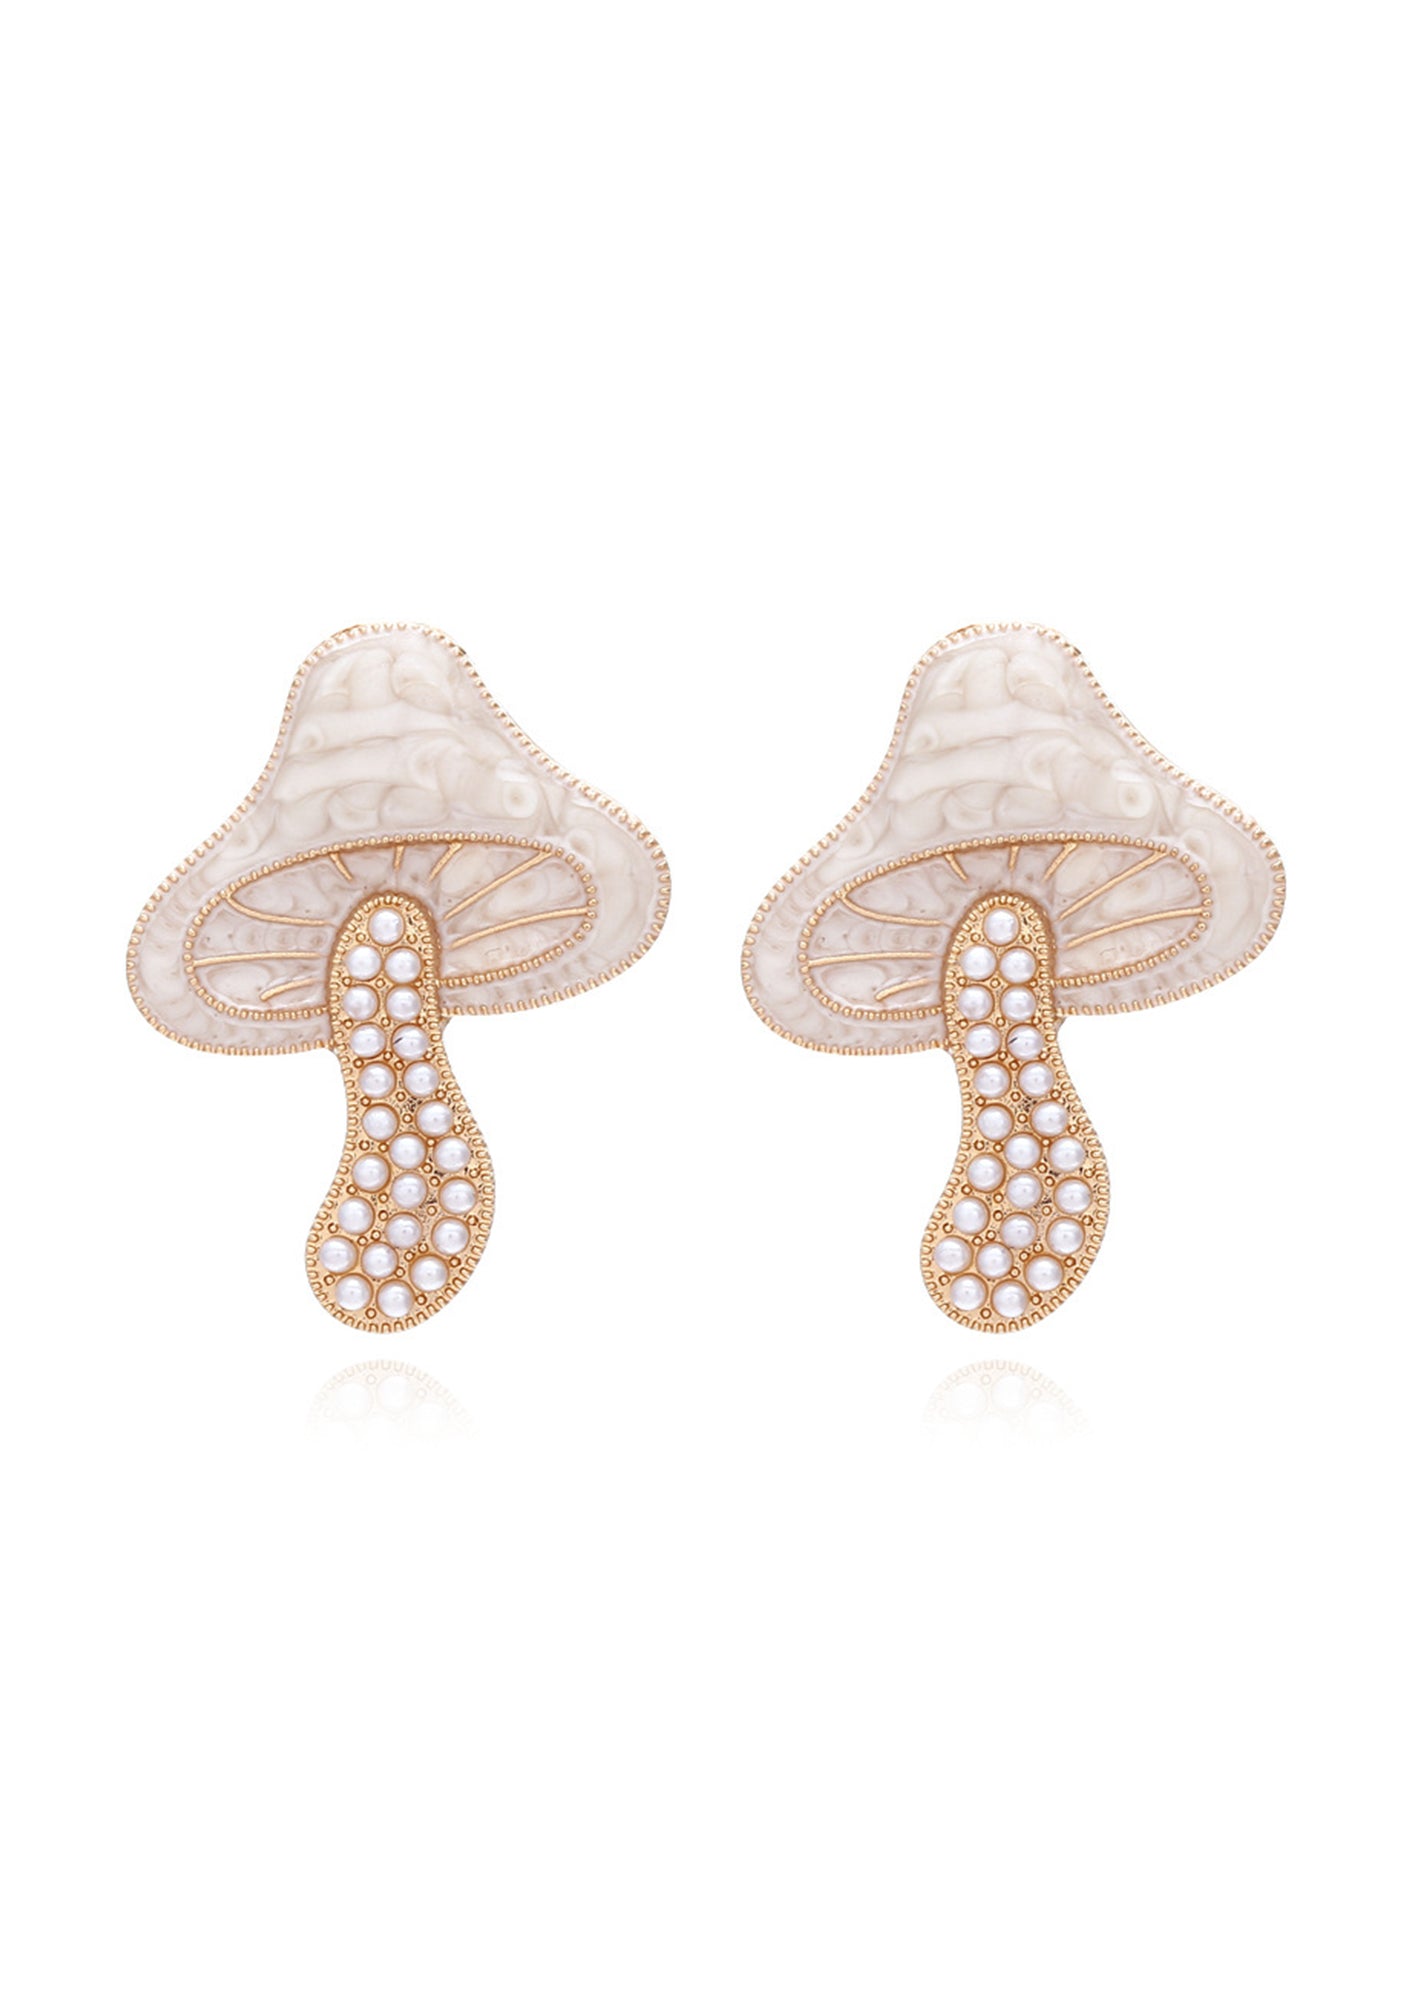 Mushroom Pearl Stud Earrings